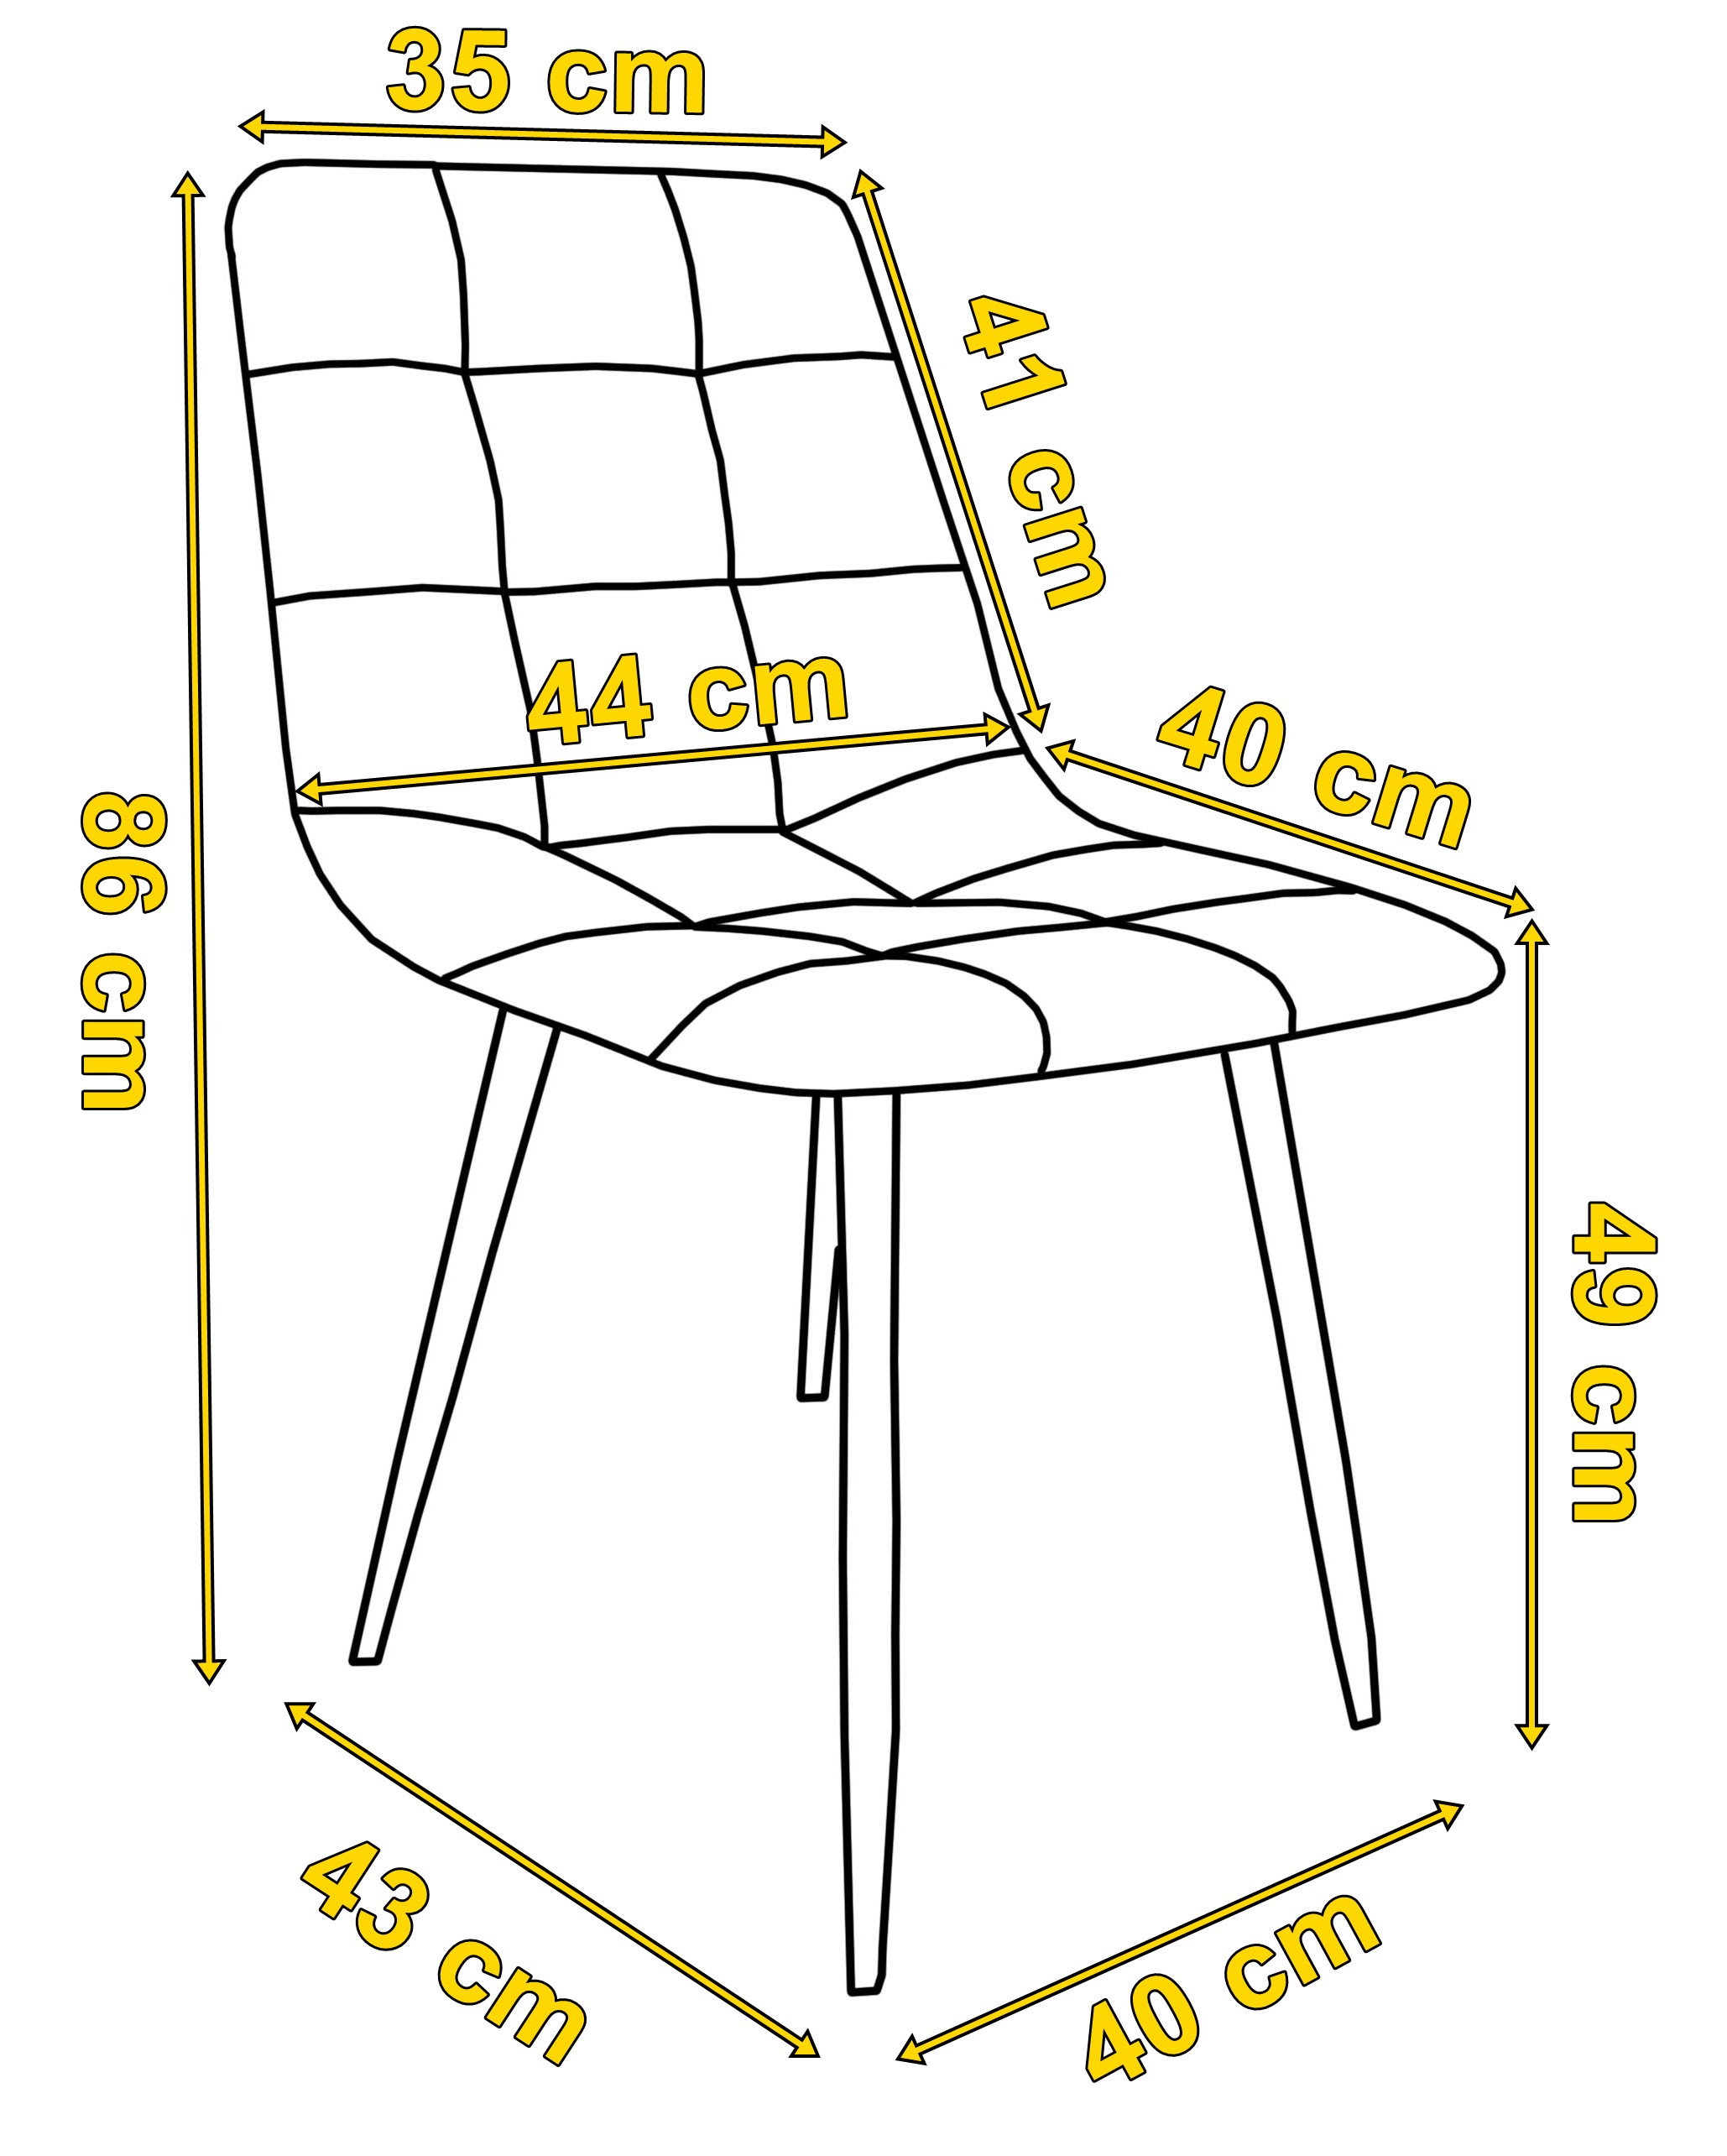 Krzesło nowoczesne aksamitne denver